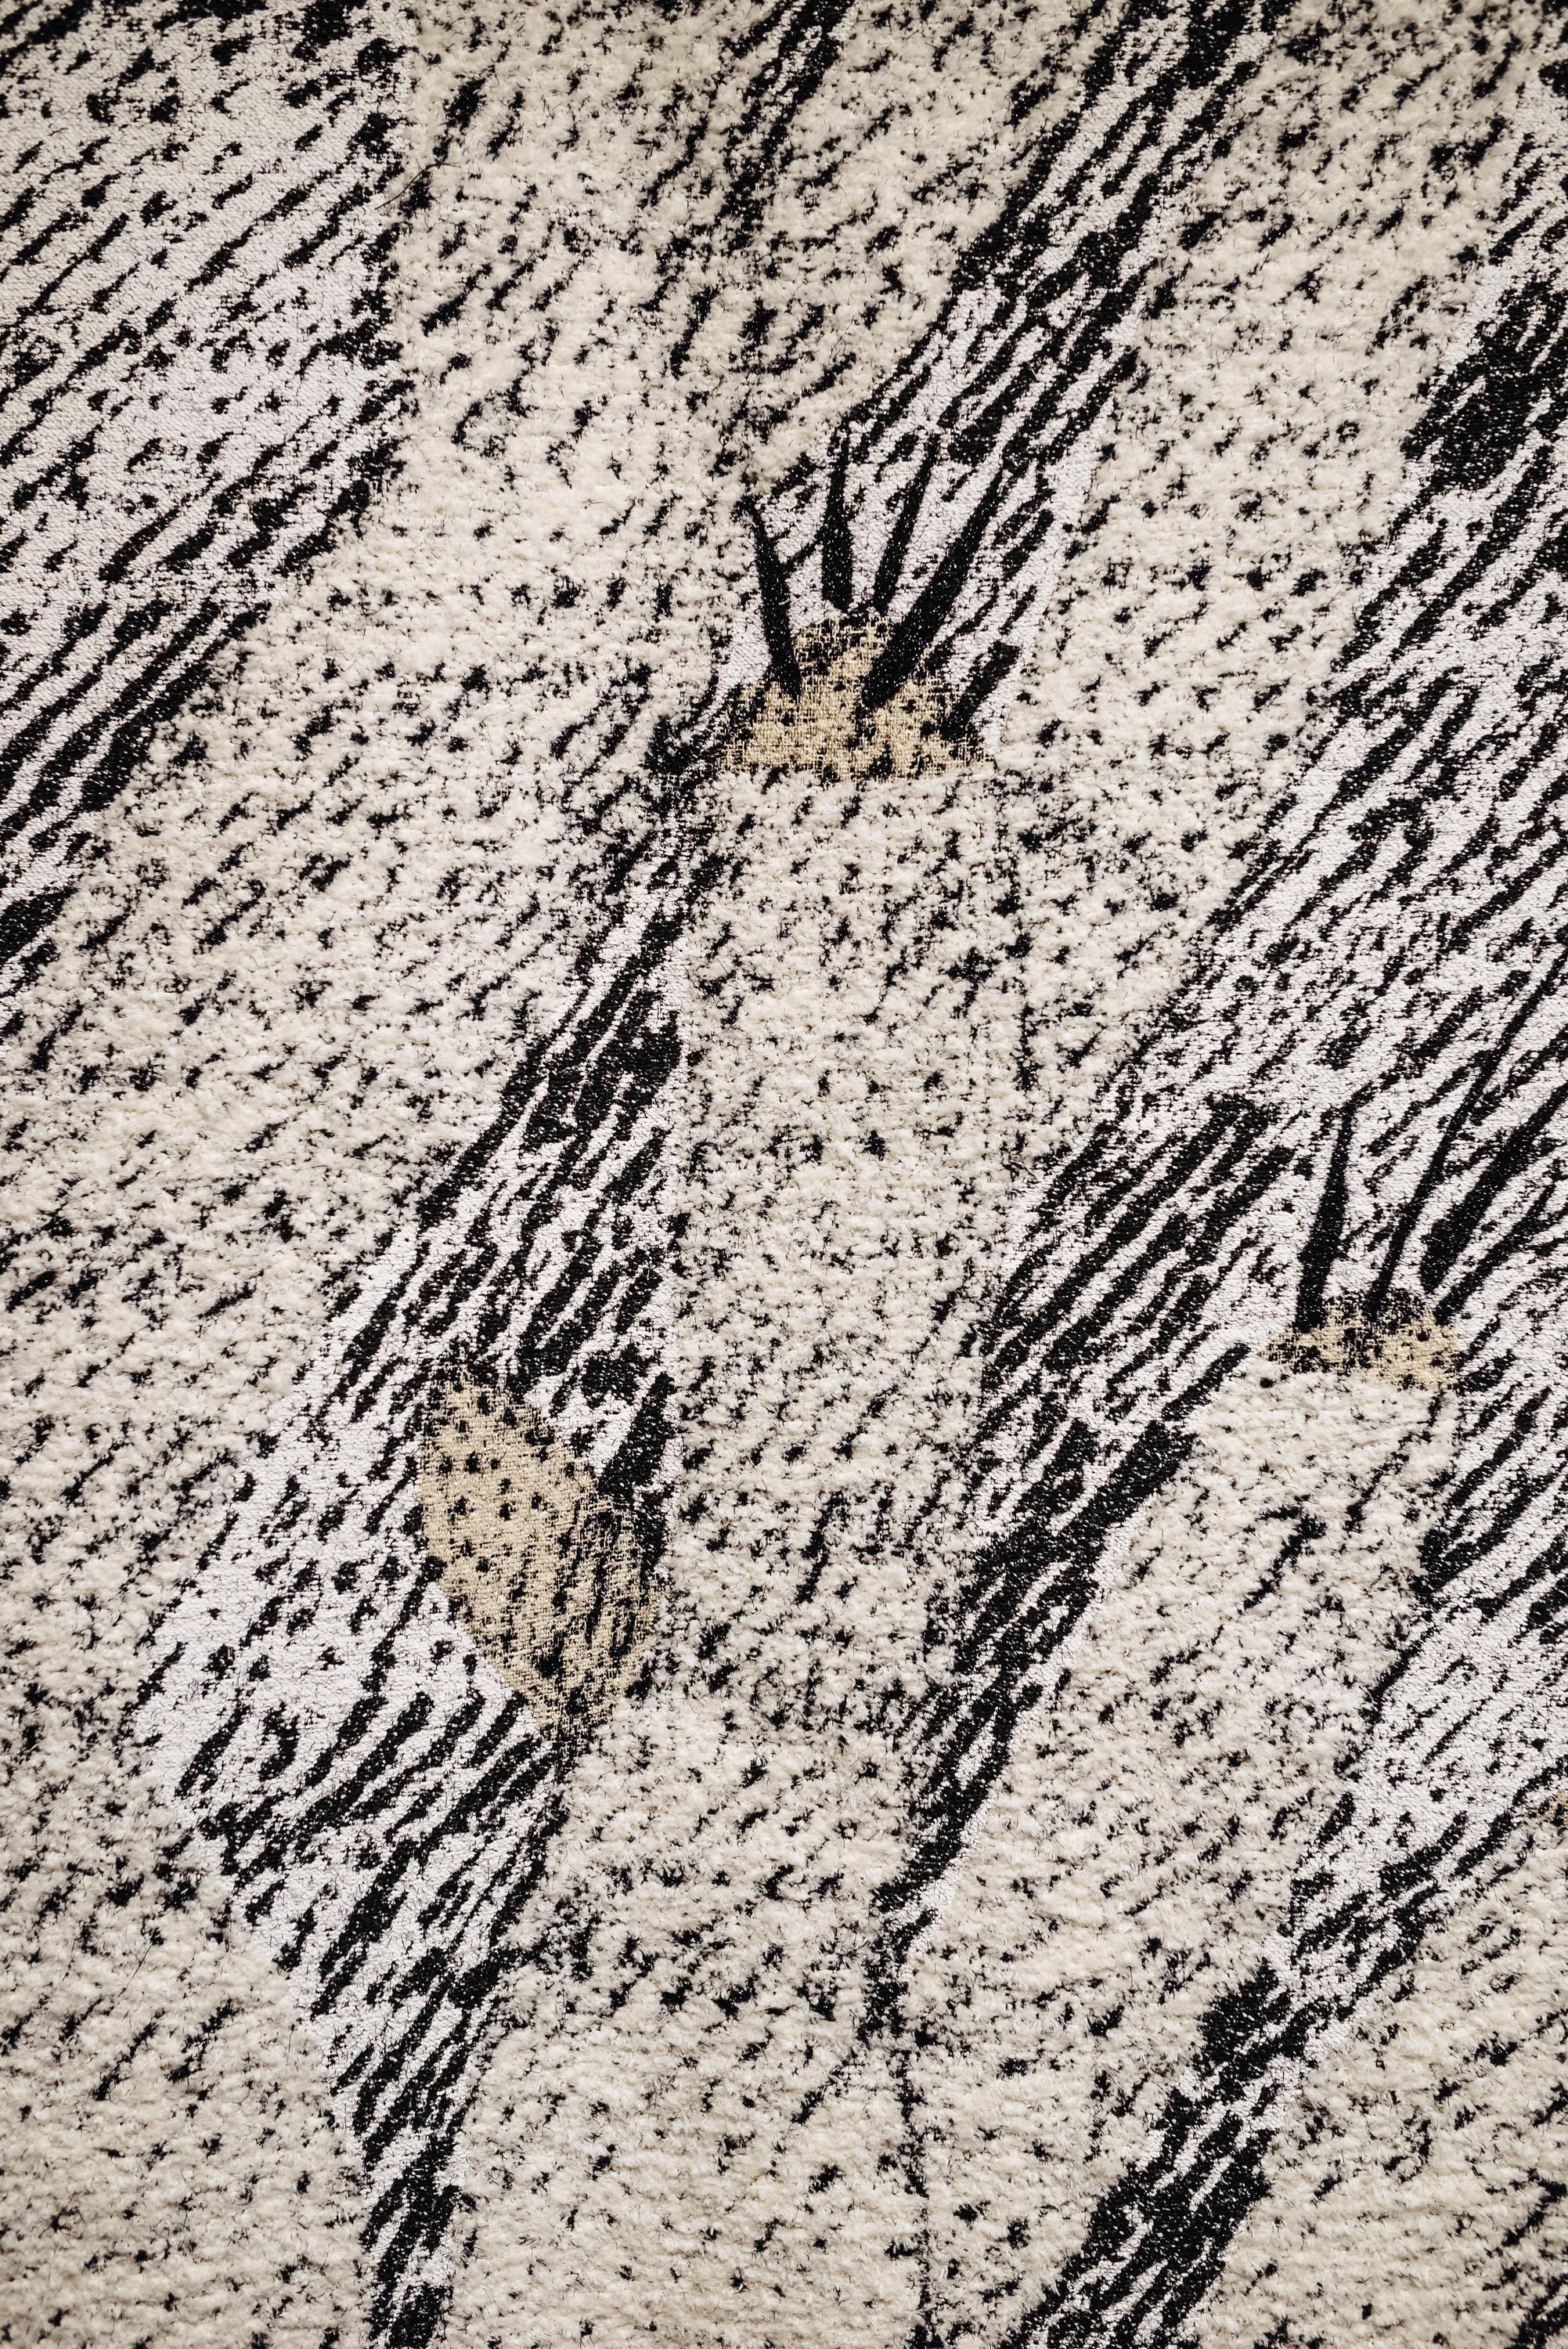 Ugo La Pietra Künstliche Natur #1 Baumwolle Seide Schurwolle Wandteppich

Ugo La Pietra präsentiert seine Wandteppiche als eine dekorative Übung als Hommage an den 